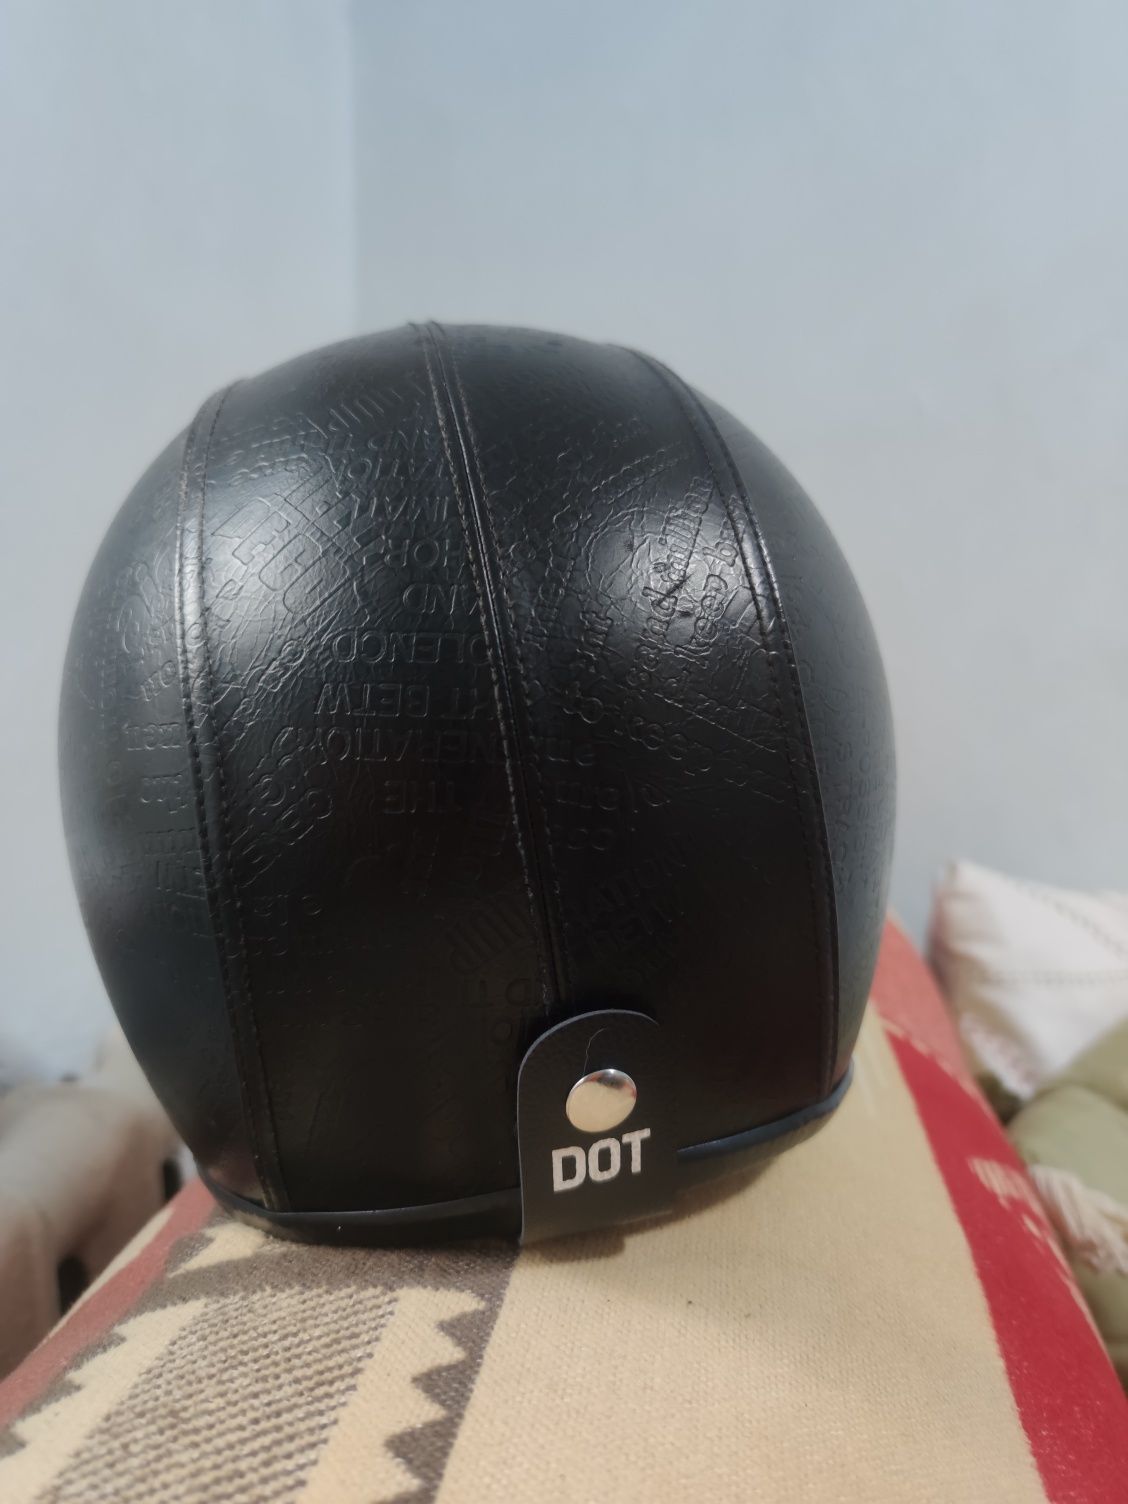 Мотоциклетный шлем. Размер M